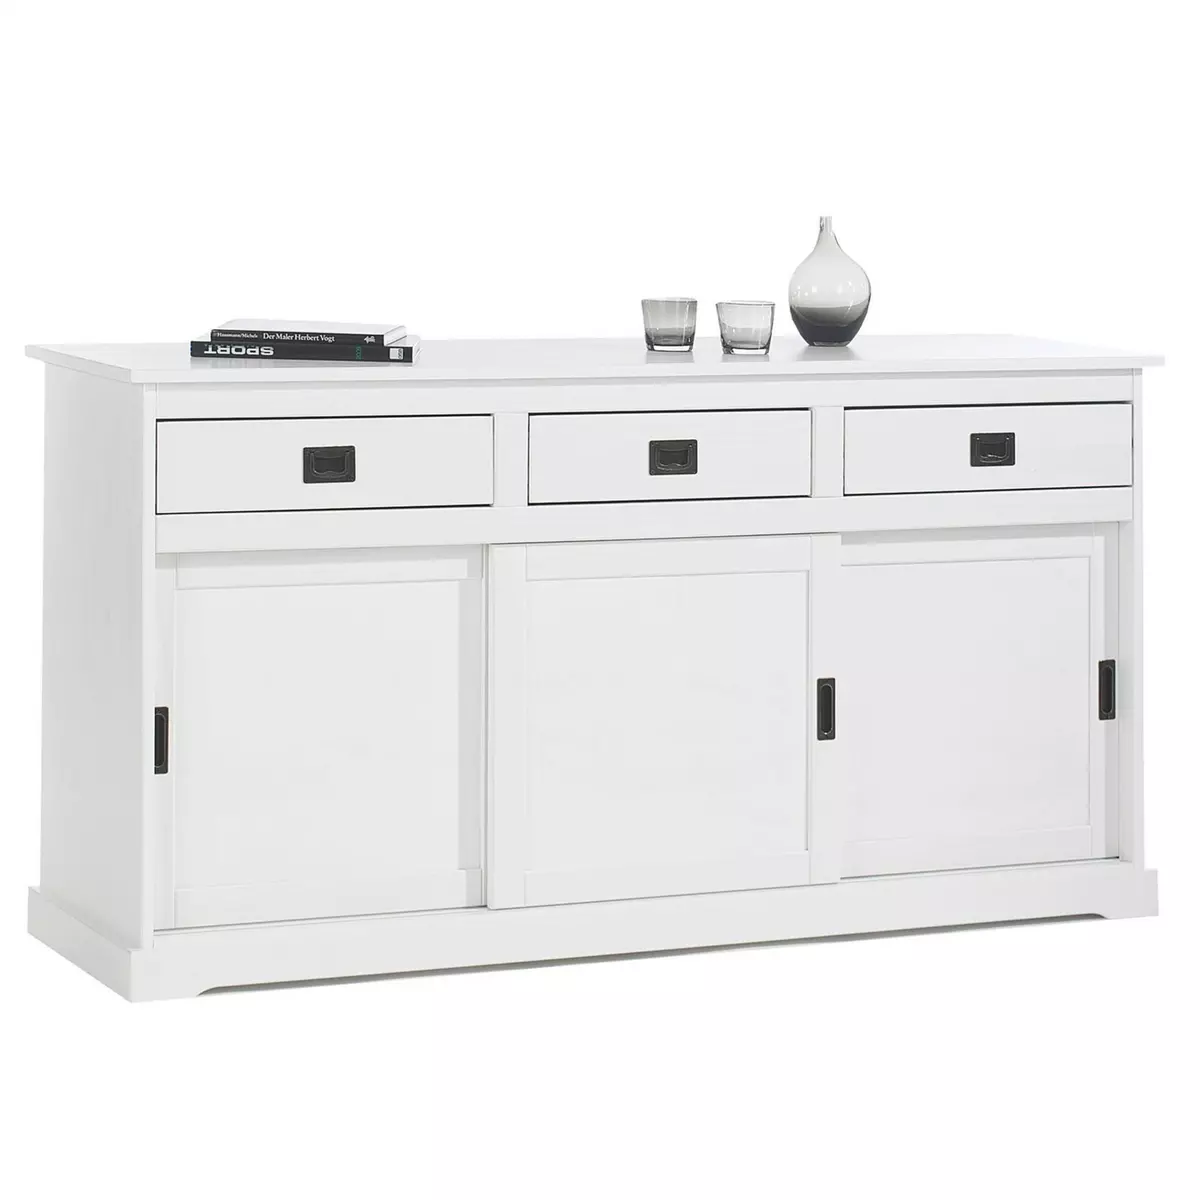 IDIMEX Buffet SAVONA bahut vaisselier commode avec 3 tiroirs et 3 portes coulissantes, en pin massif lasuré blanc